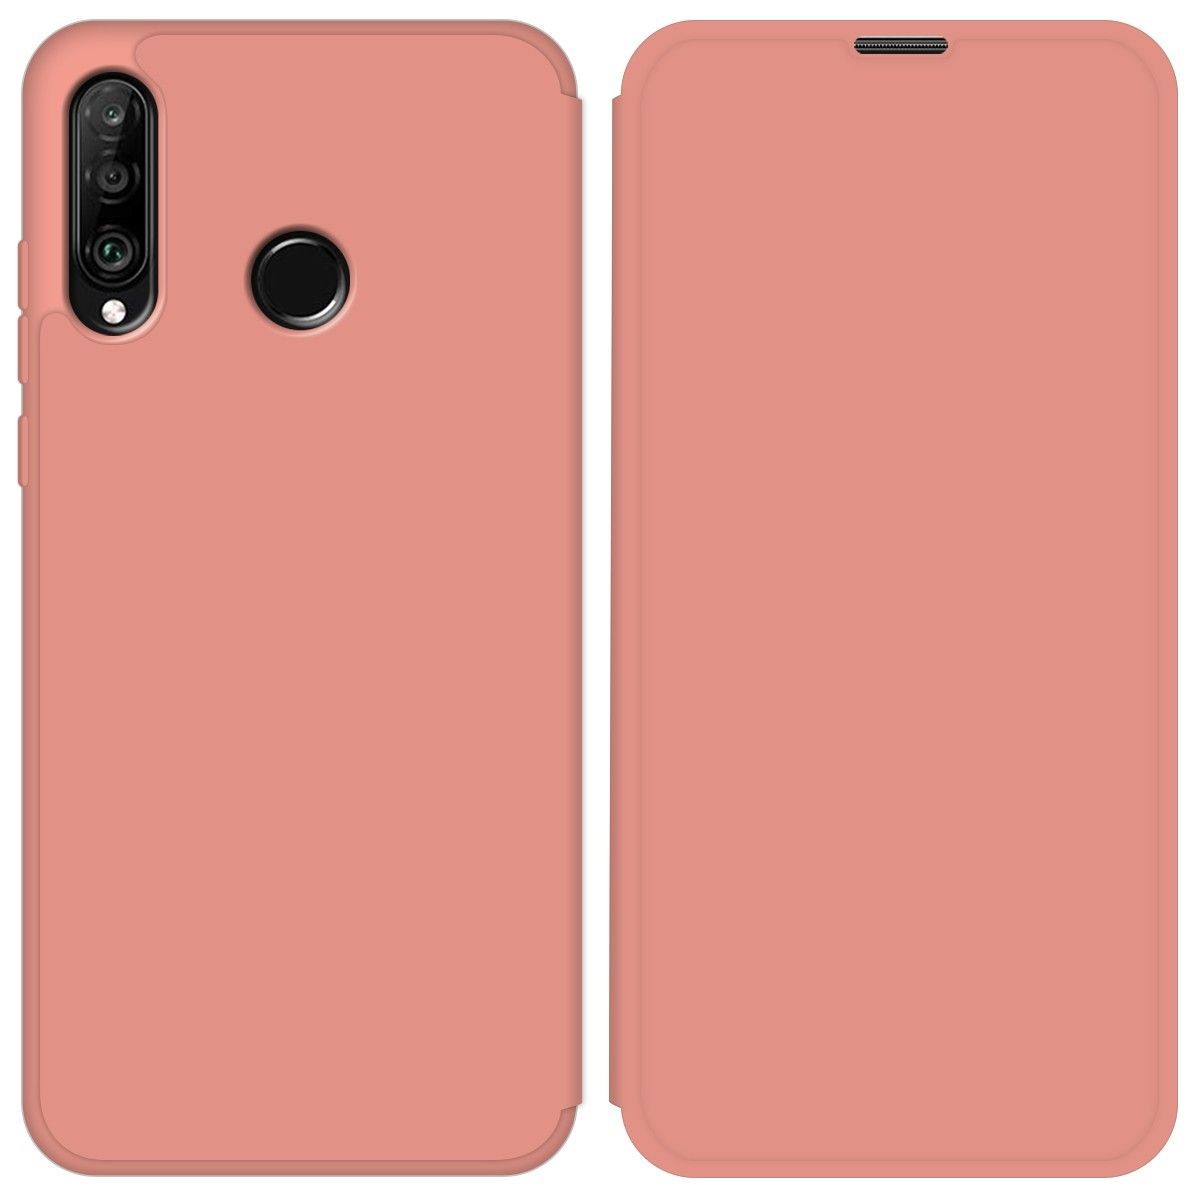 Funda Silicona Líquida con Tapa para Huawei P30 Lite color Rosa Pastel